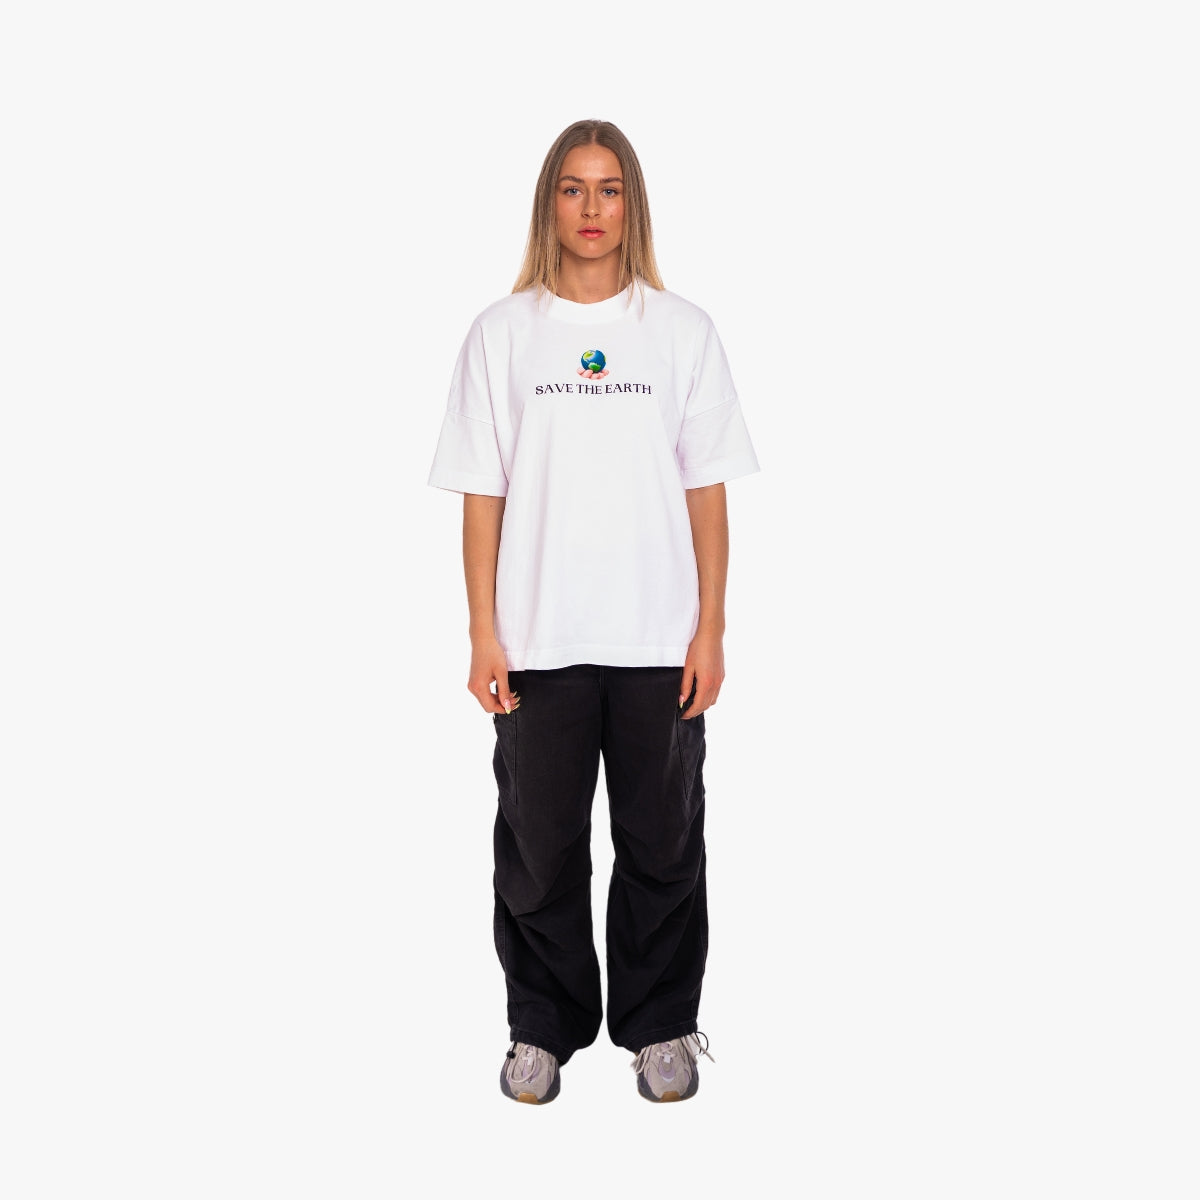 'SAVE THE EARTH' Organic Oversize Shirt in der Farbe White als Komplettaufnahme vom Outfit getragen von einem weiblichen Model